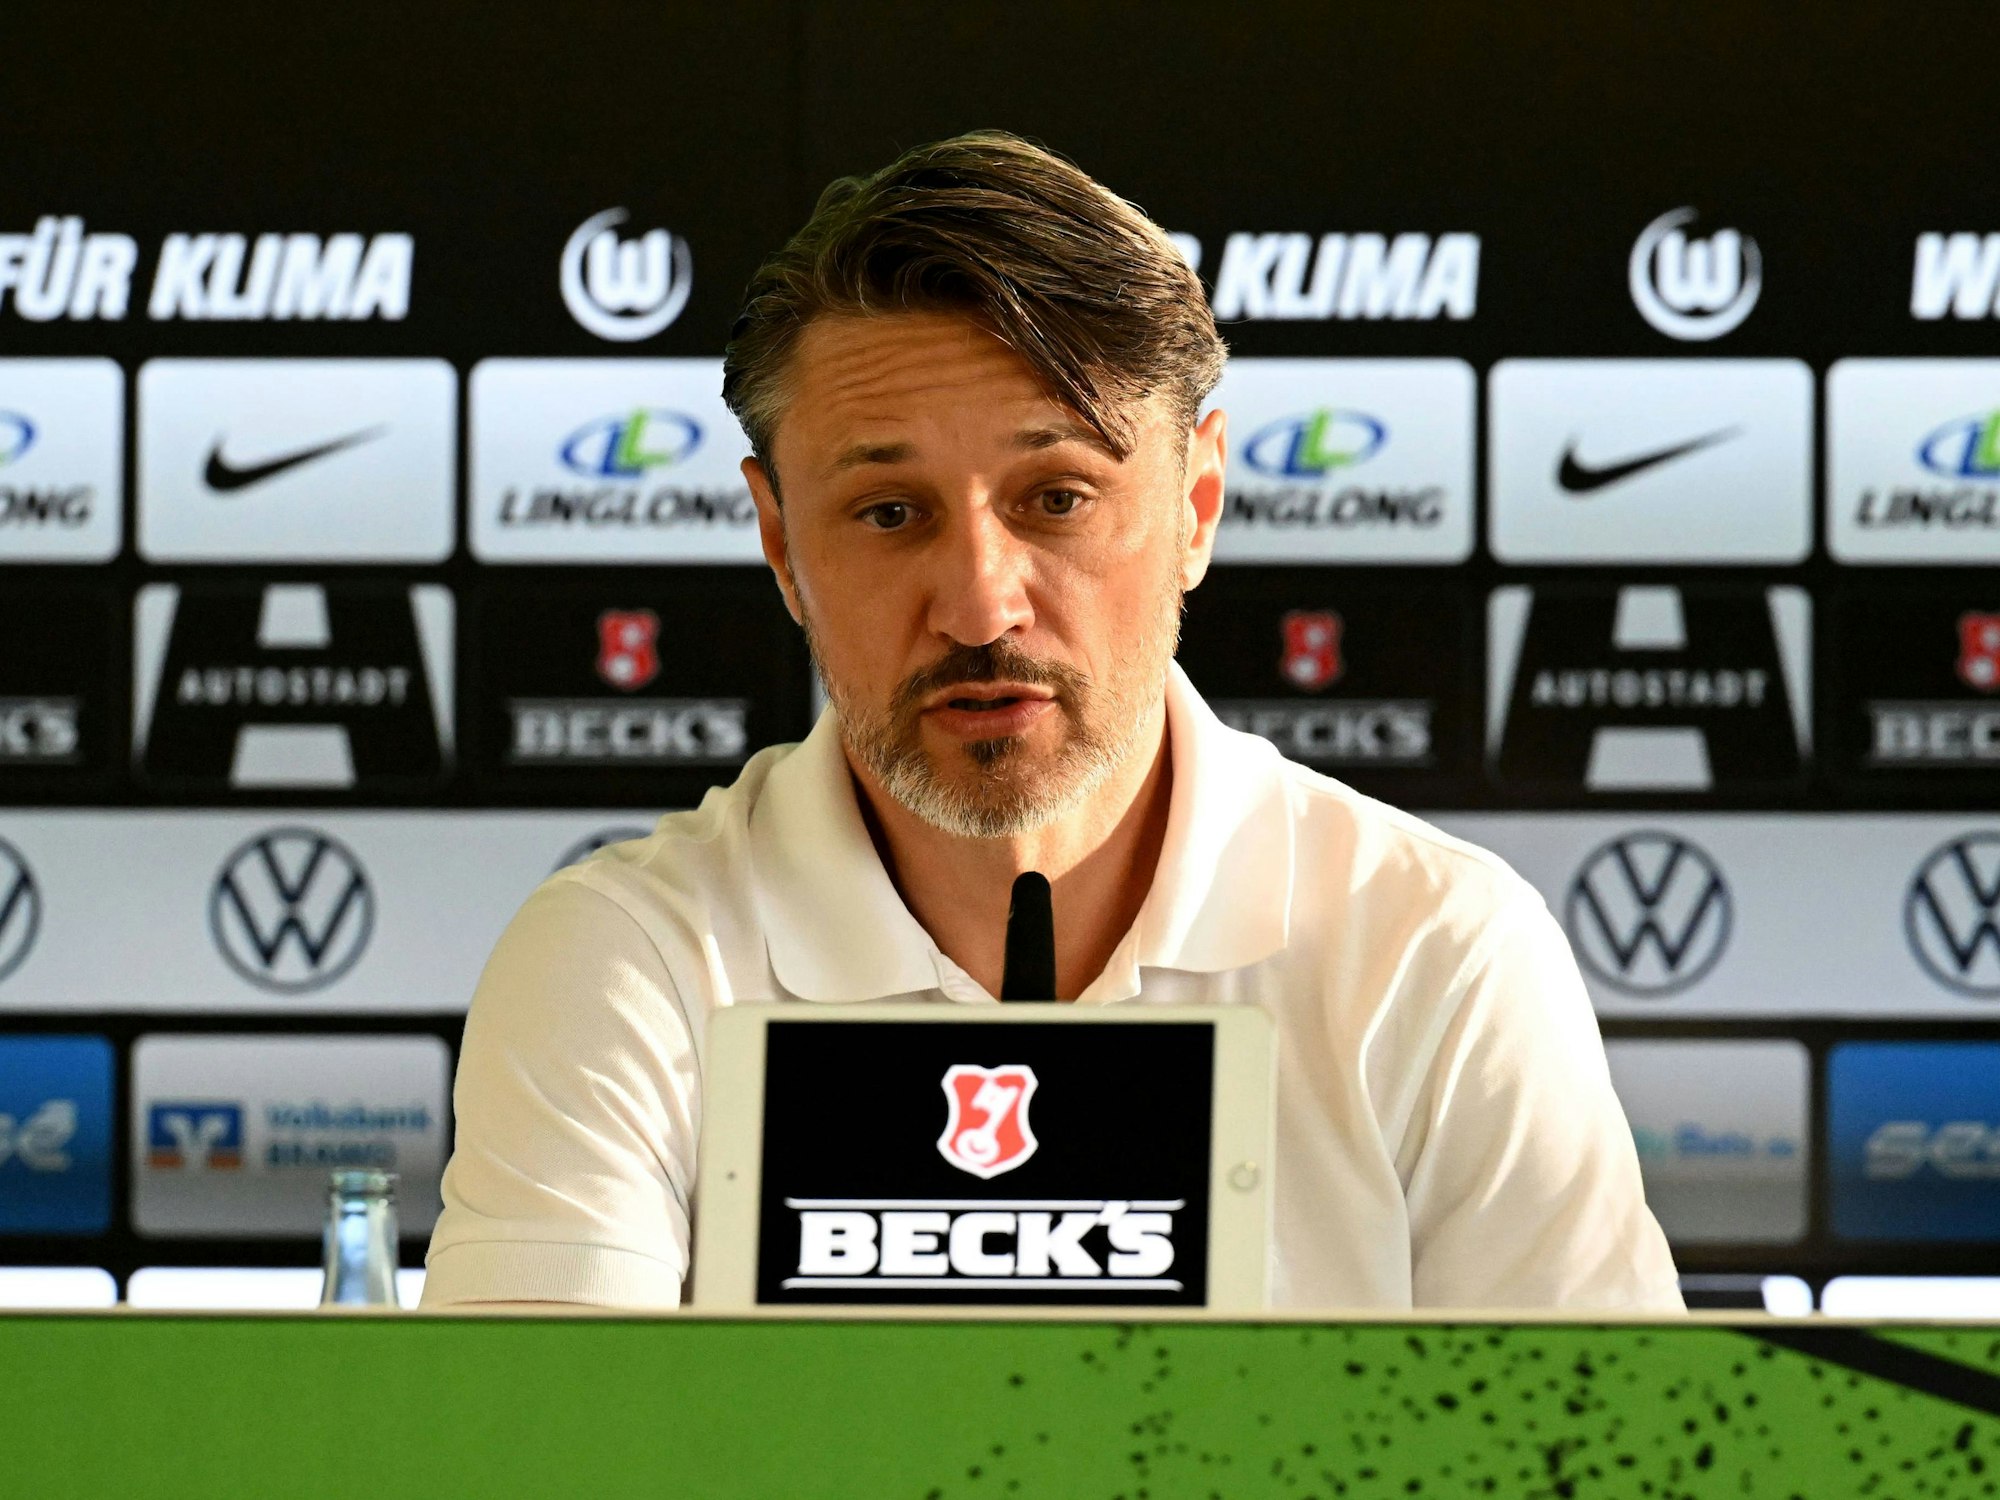 Niko Kovac sitzt bei einer Pressekonferenz hinter einem Mikrofon und einer elektronischen Anzeige, die das Logo Beck's zeigt.